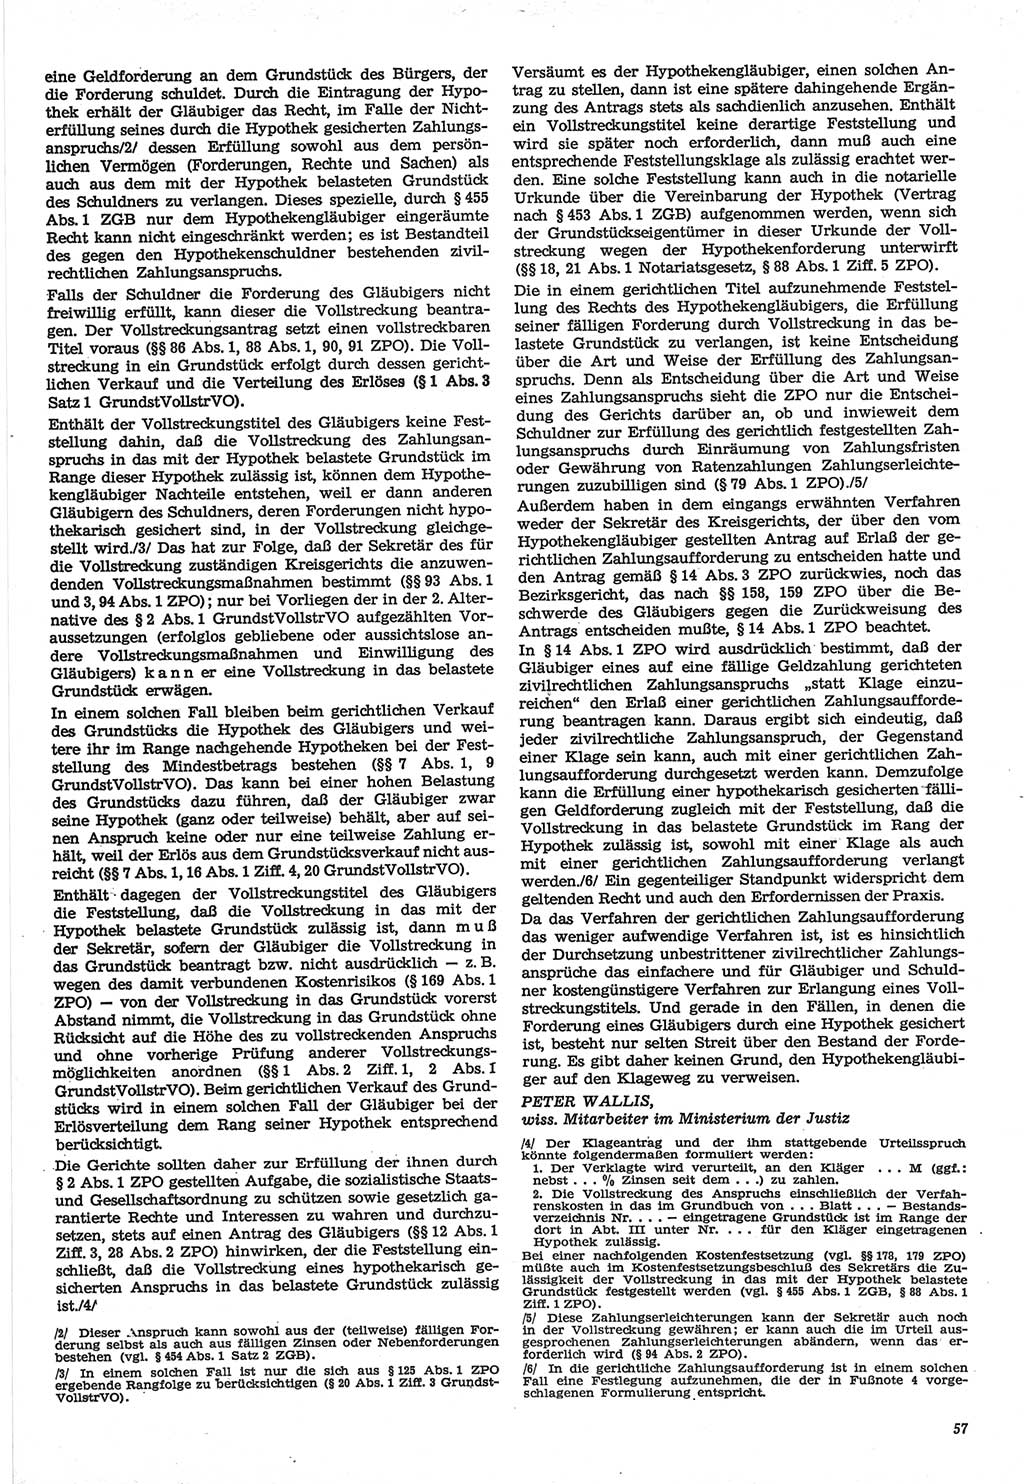 Neue Justiz (NJ), Zeitschrift für Recht und Rechtswissenschaft-Zeitschrift, sozialistisches Recht und Gesetzlichkeit, 31. Jahrgang 1977, Seite 57 (NJ DDR 1977, S. 57)